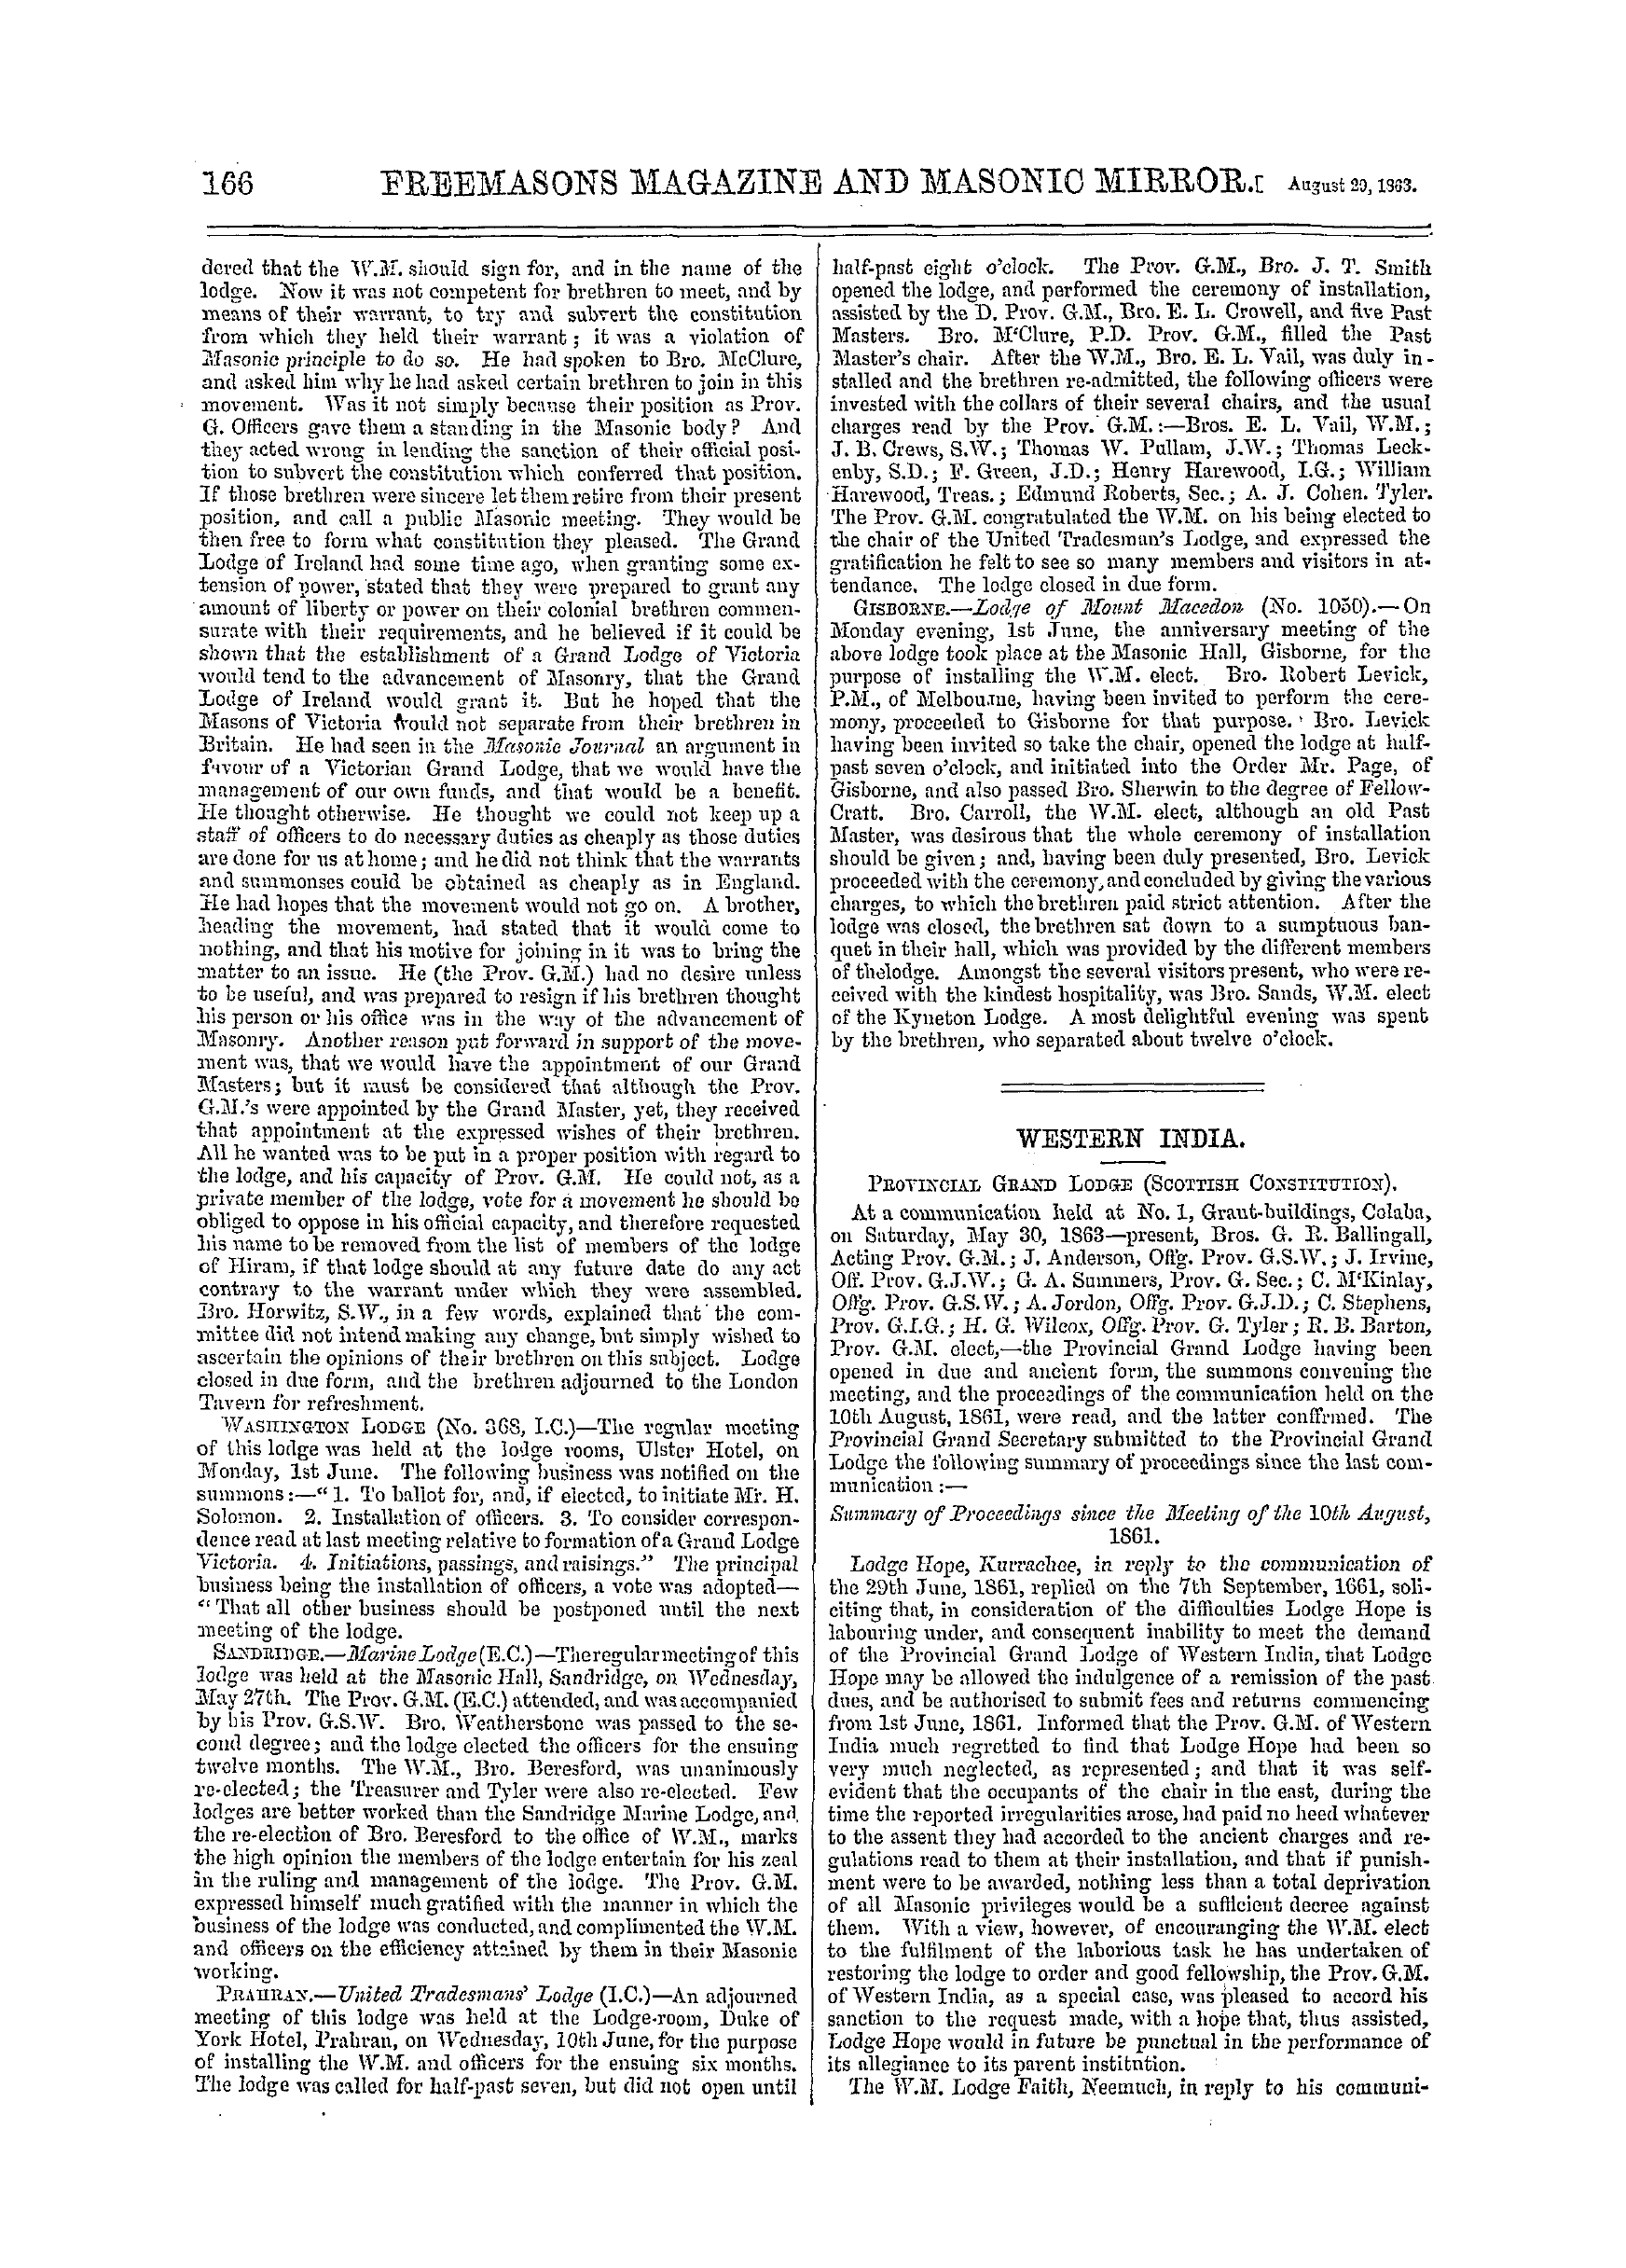 The Freemasons' Monthly Magazine: 1863-08-29 - Western India.